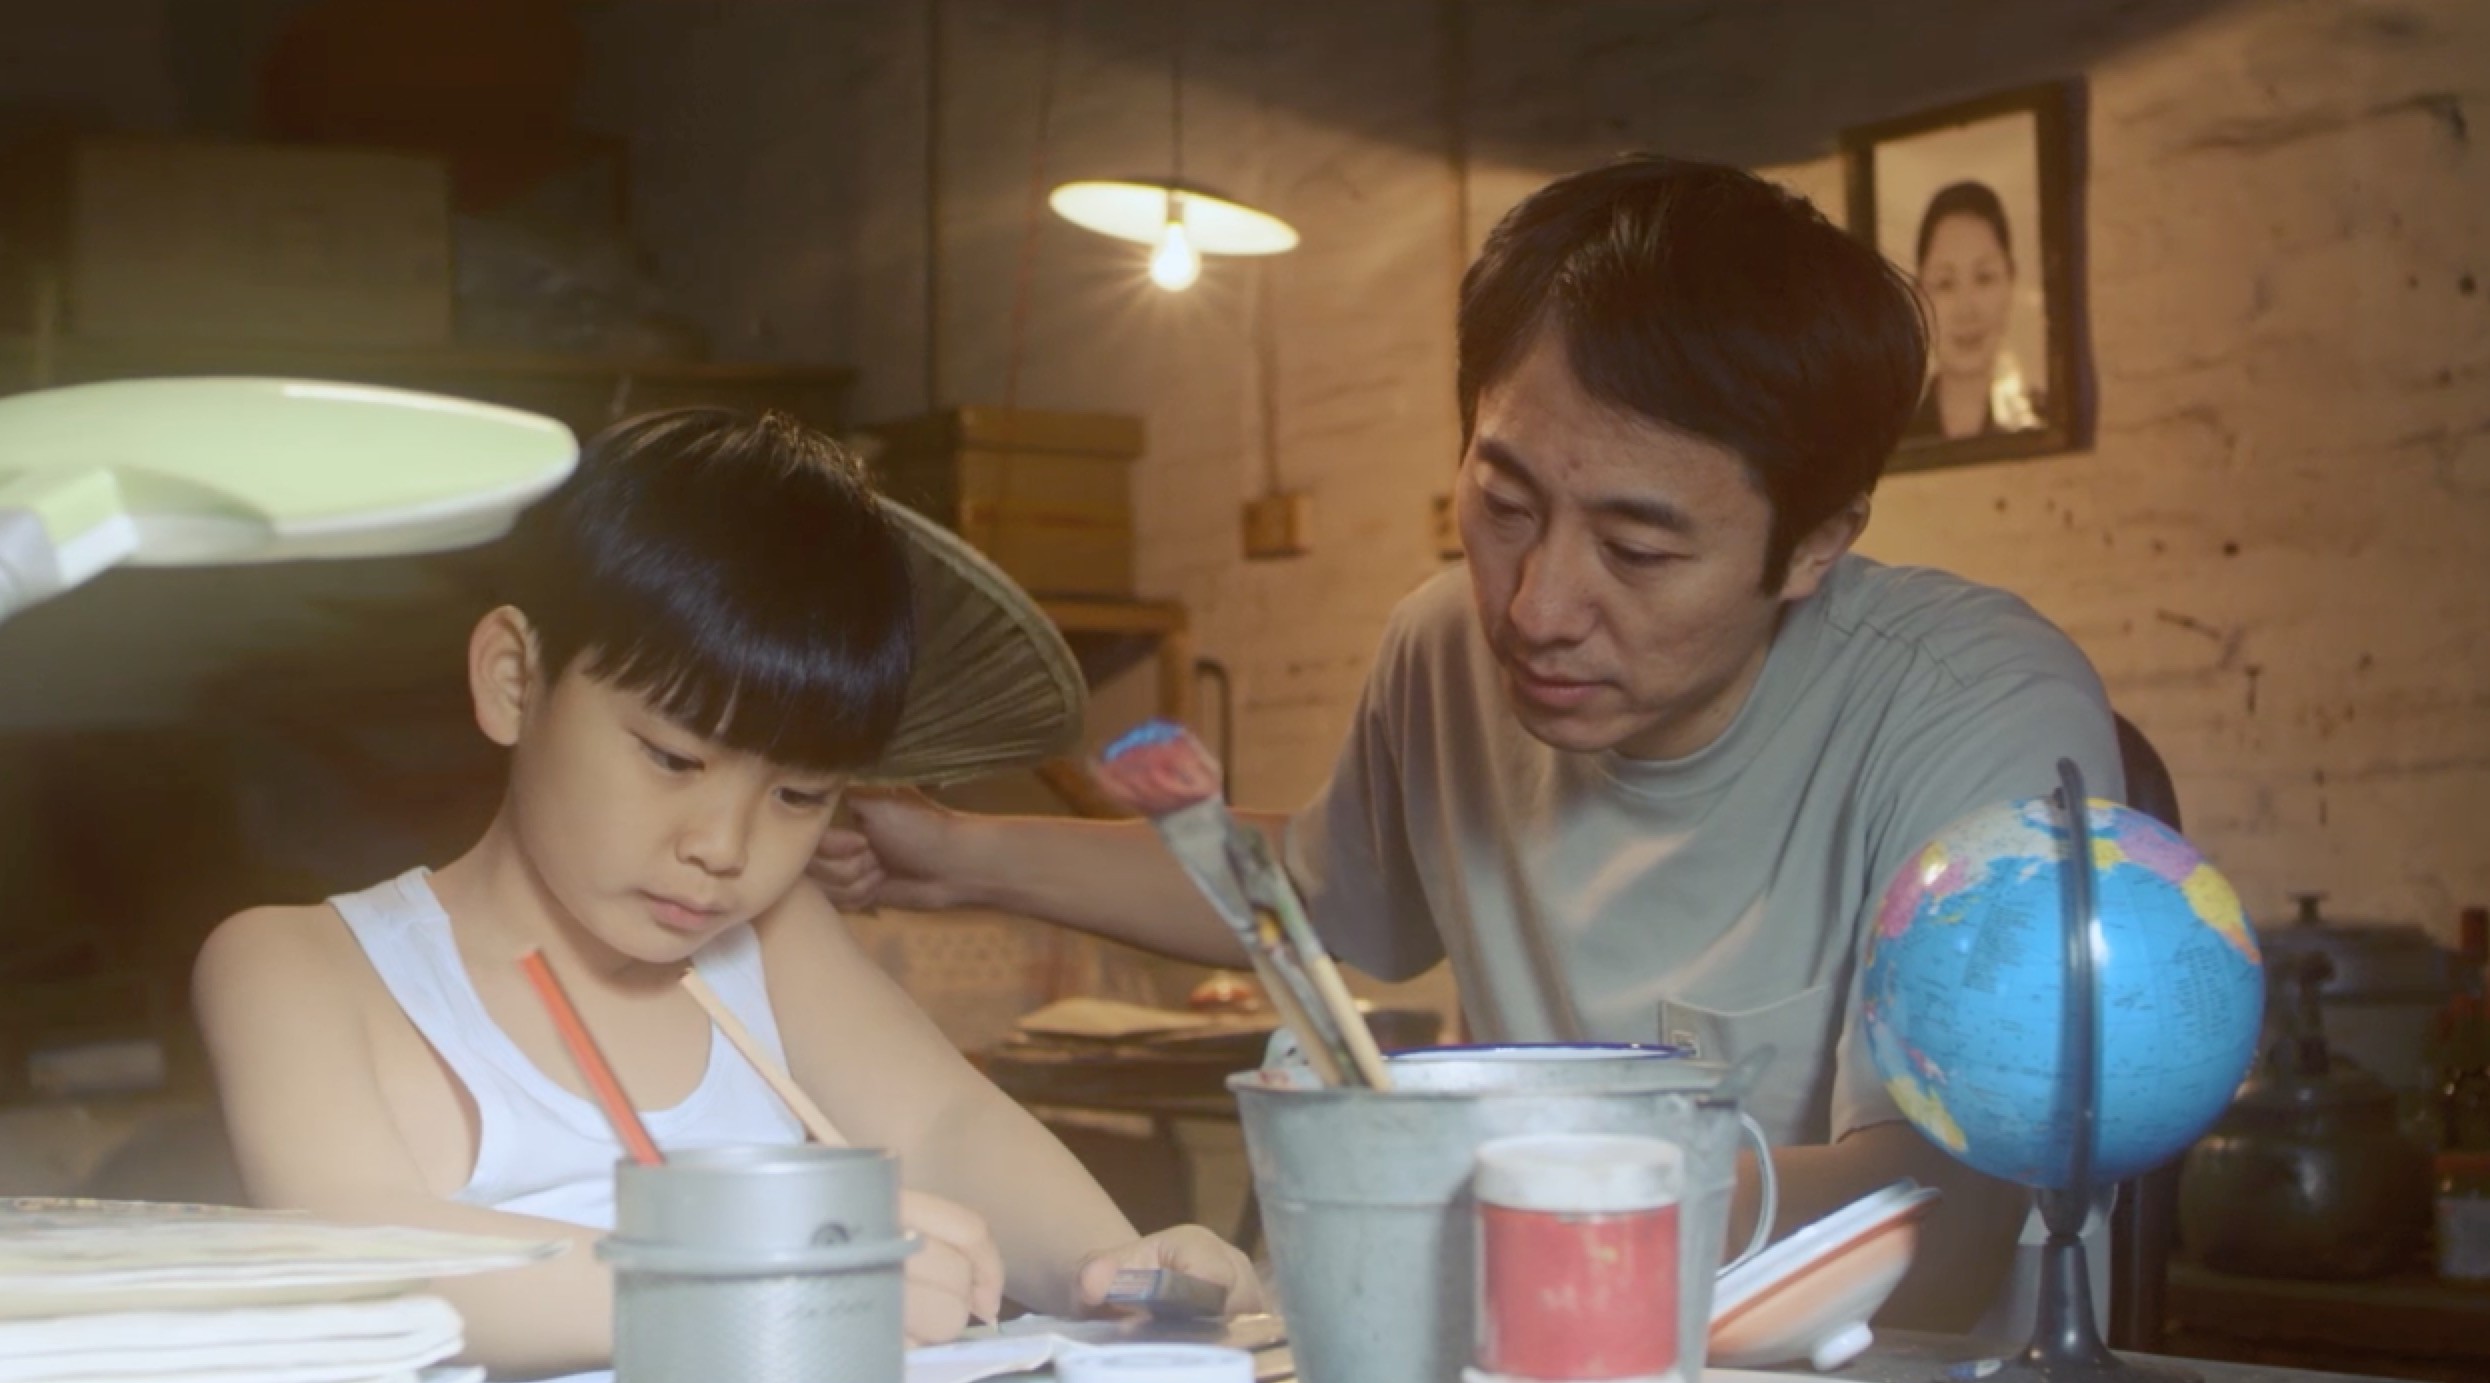 Sunbenz 尚本－乐友家集团2018年度催泪微电影《父亲的家》 